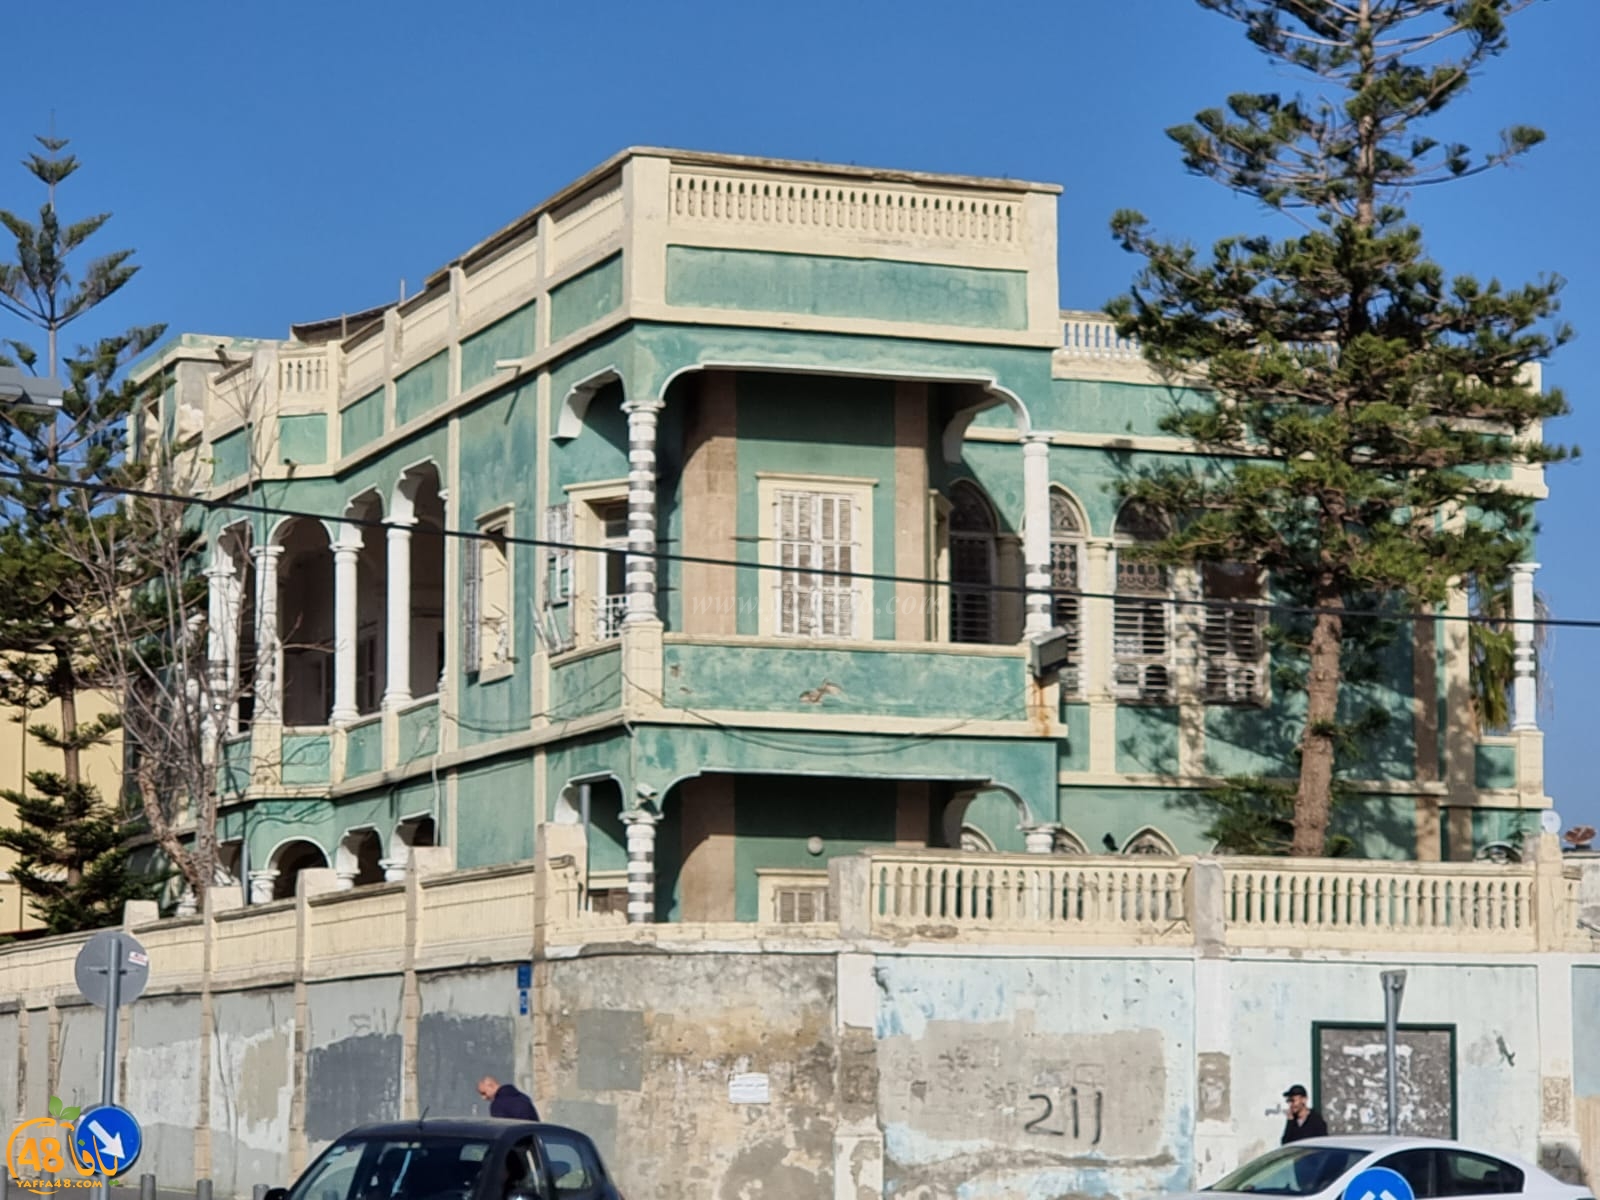  البدء بعملية إخلاء البيت الأخضر وسط مدينة يافا 